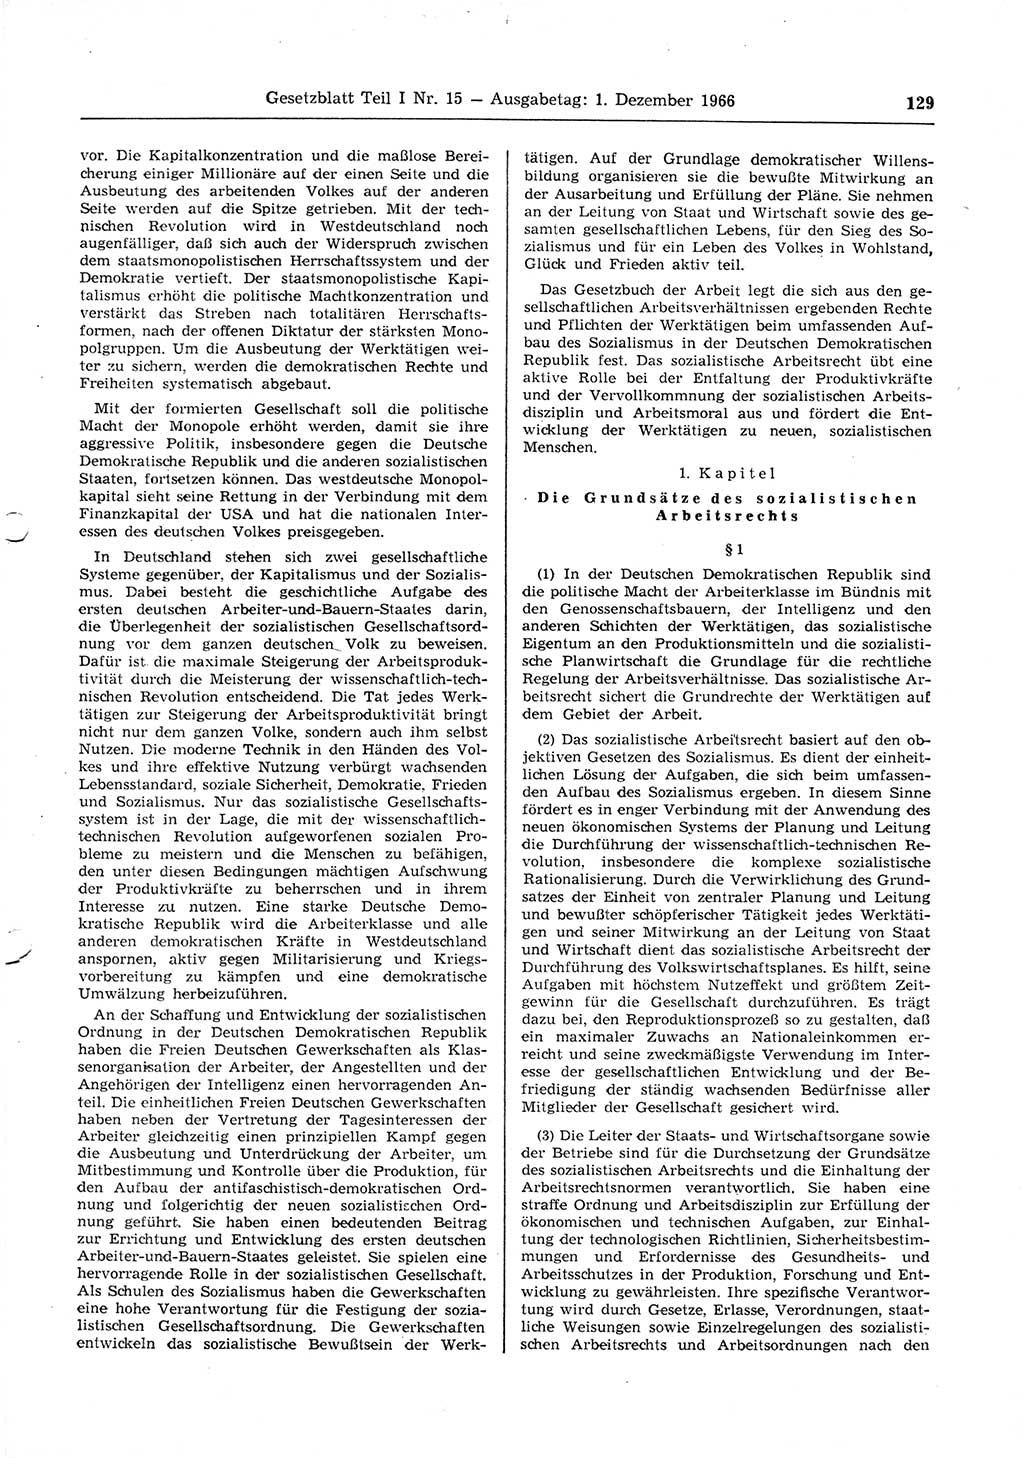 Gesetzblatt (GBl.) der Deutschen Demokratischen Republik (DDR) Teil Ⅰ 1966, Seite 129 (GBl. DDR Ⅰ 1966, S. 129)